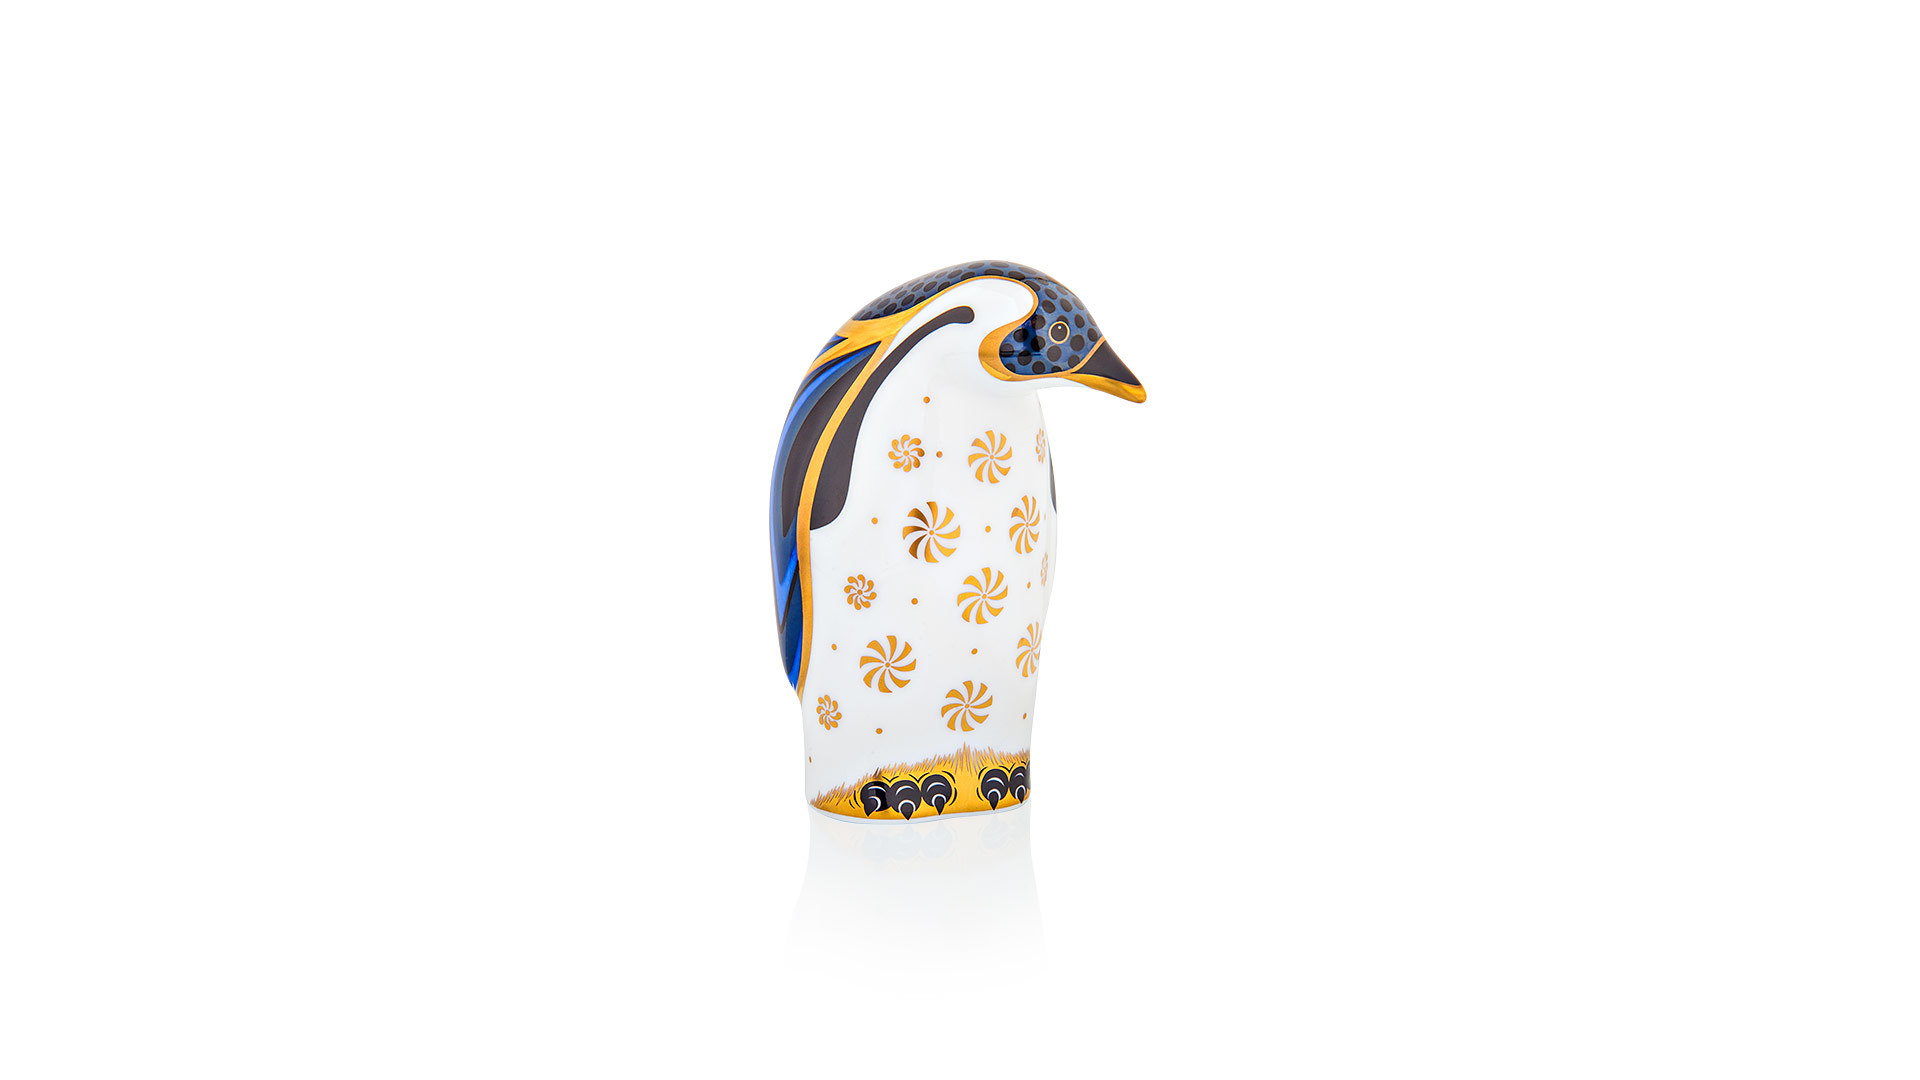 Пресс-папье Royal Crown Derby Пингвин 11см